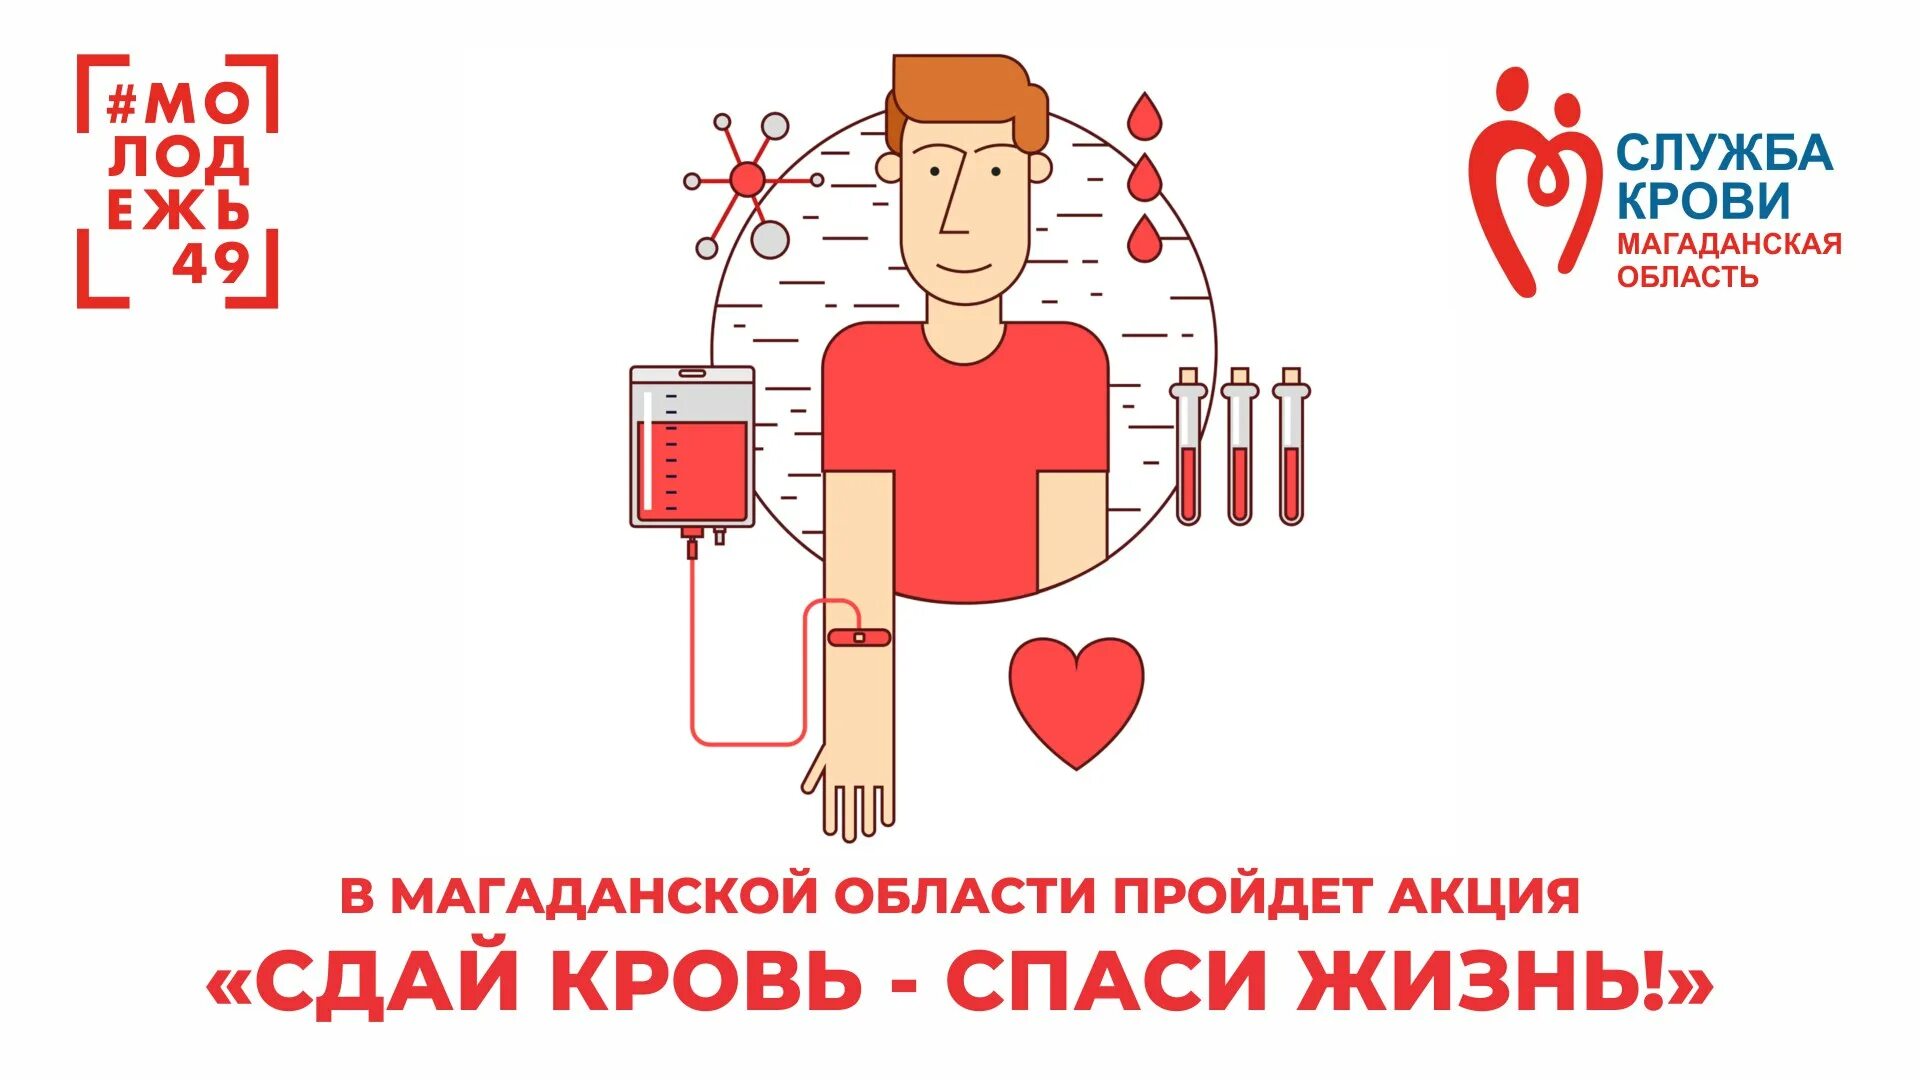 Всемирный день донора крови. Сдай кровь Спаси жизнь. Акция Сдай кровь Спаси жизнь. Донор крови донор жизни. Мама антона решила сдать кровь в качестве